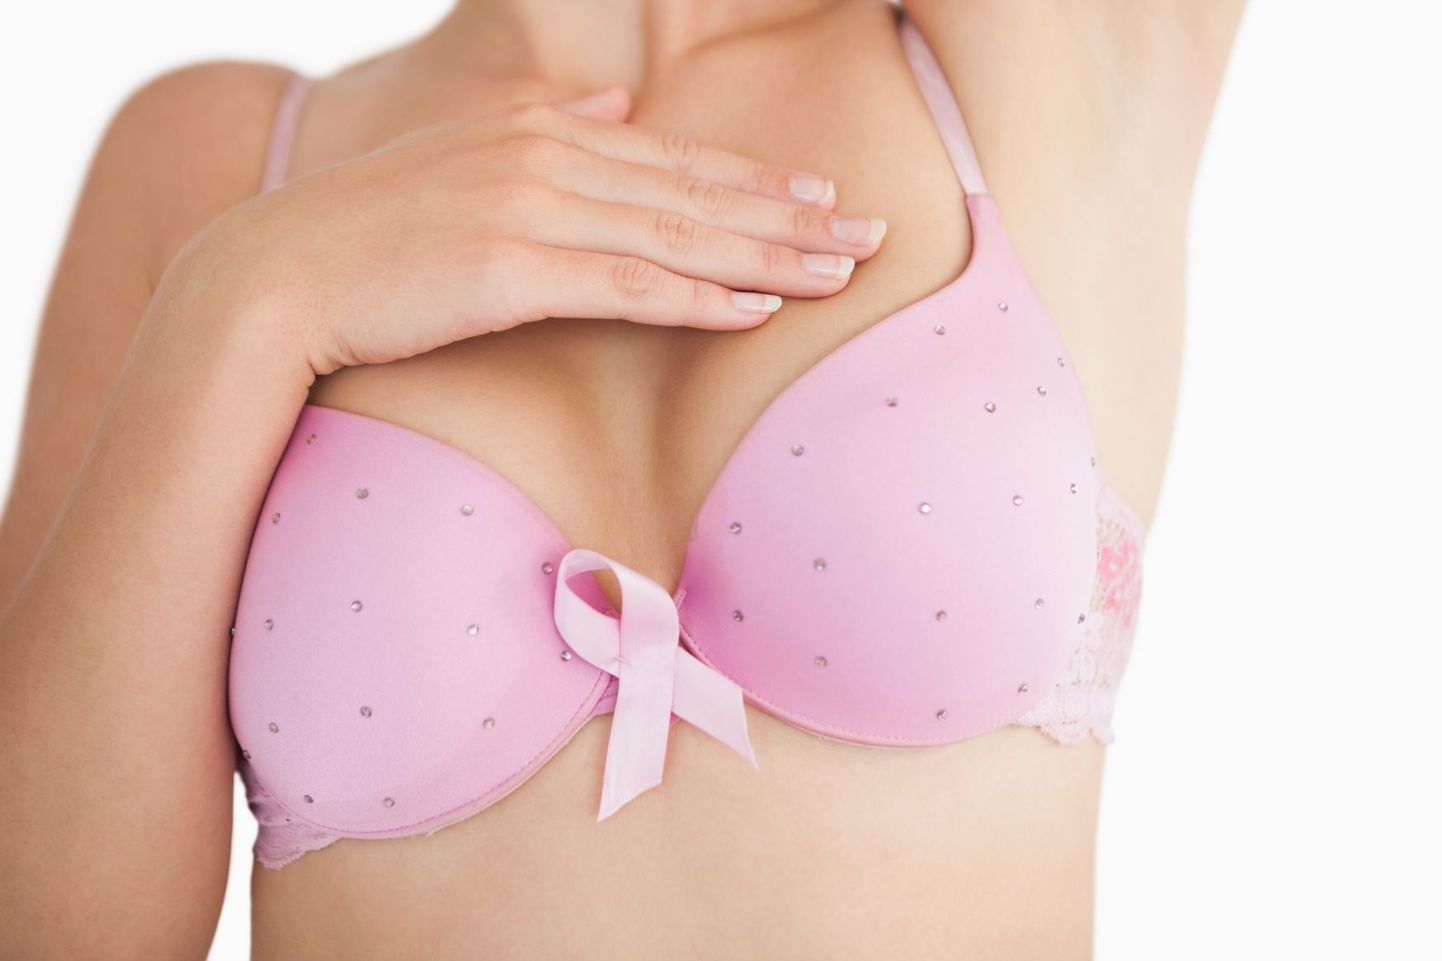 Arstid soovitavad naistel vähi varajaseks avastamiseks  regulaarselt rindu kontrollida.